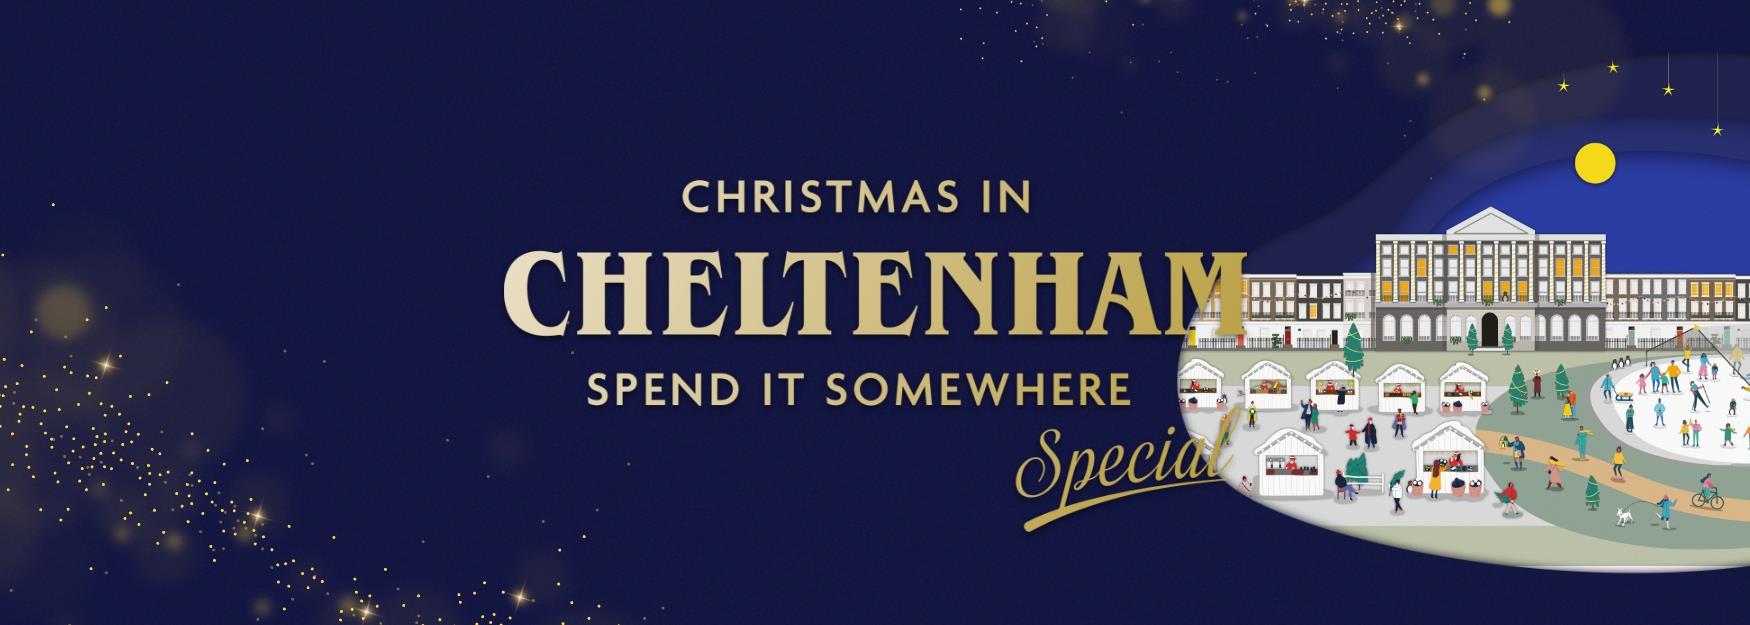 Christmas in Cheltenham